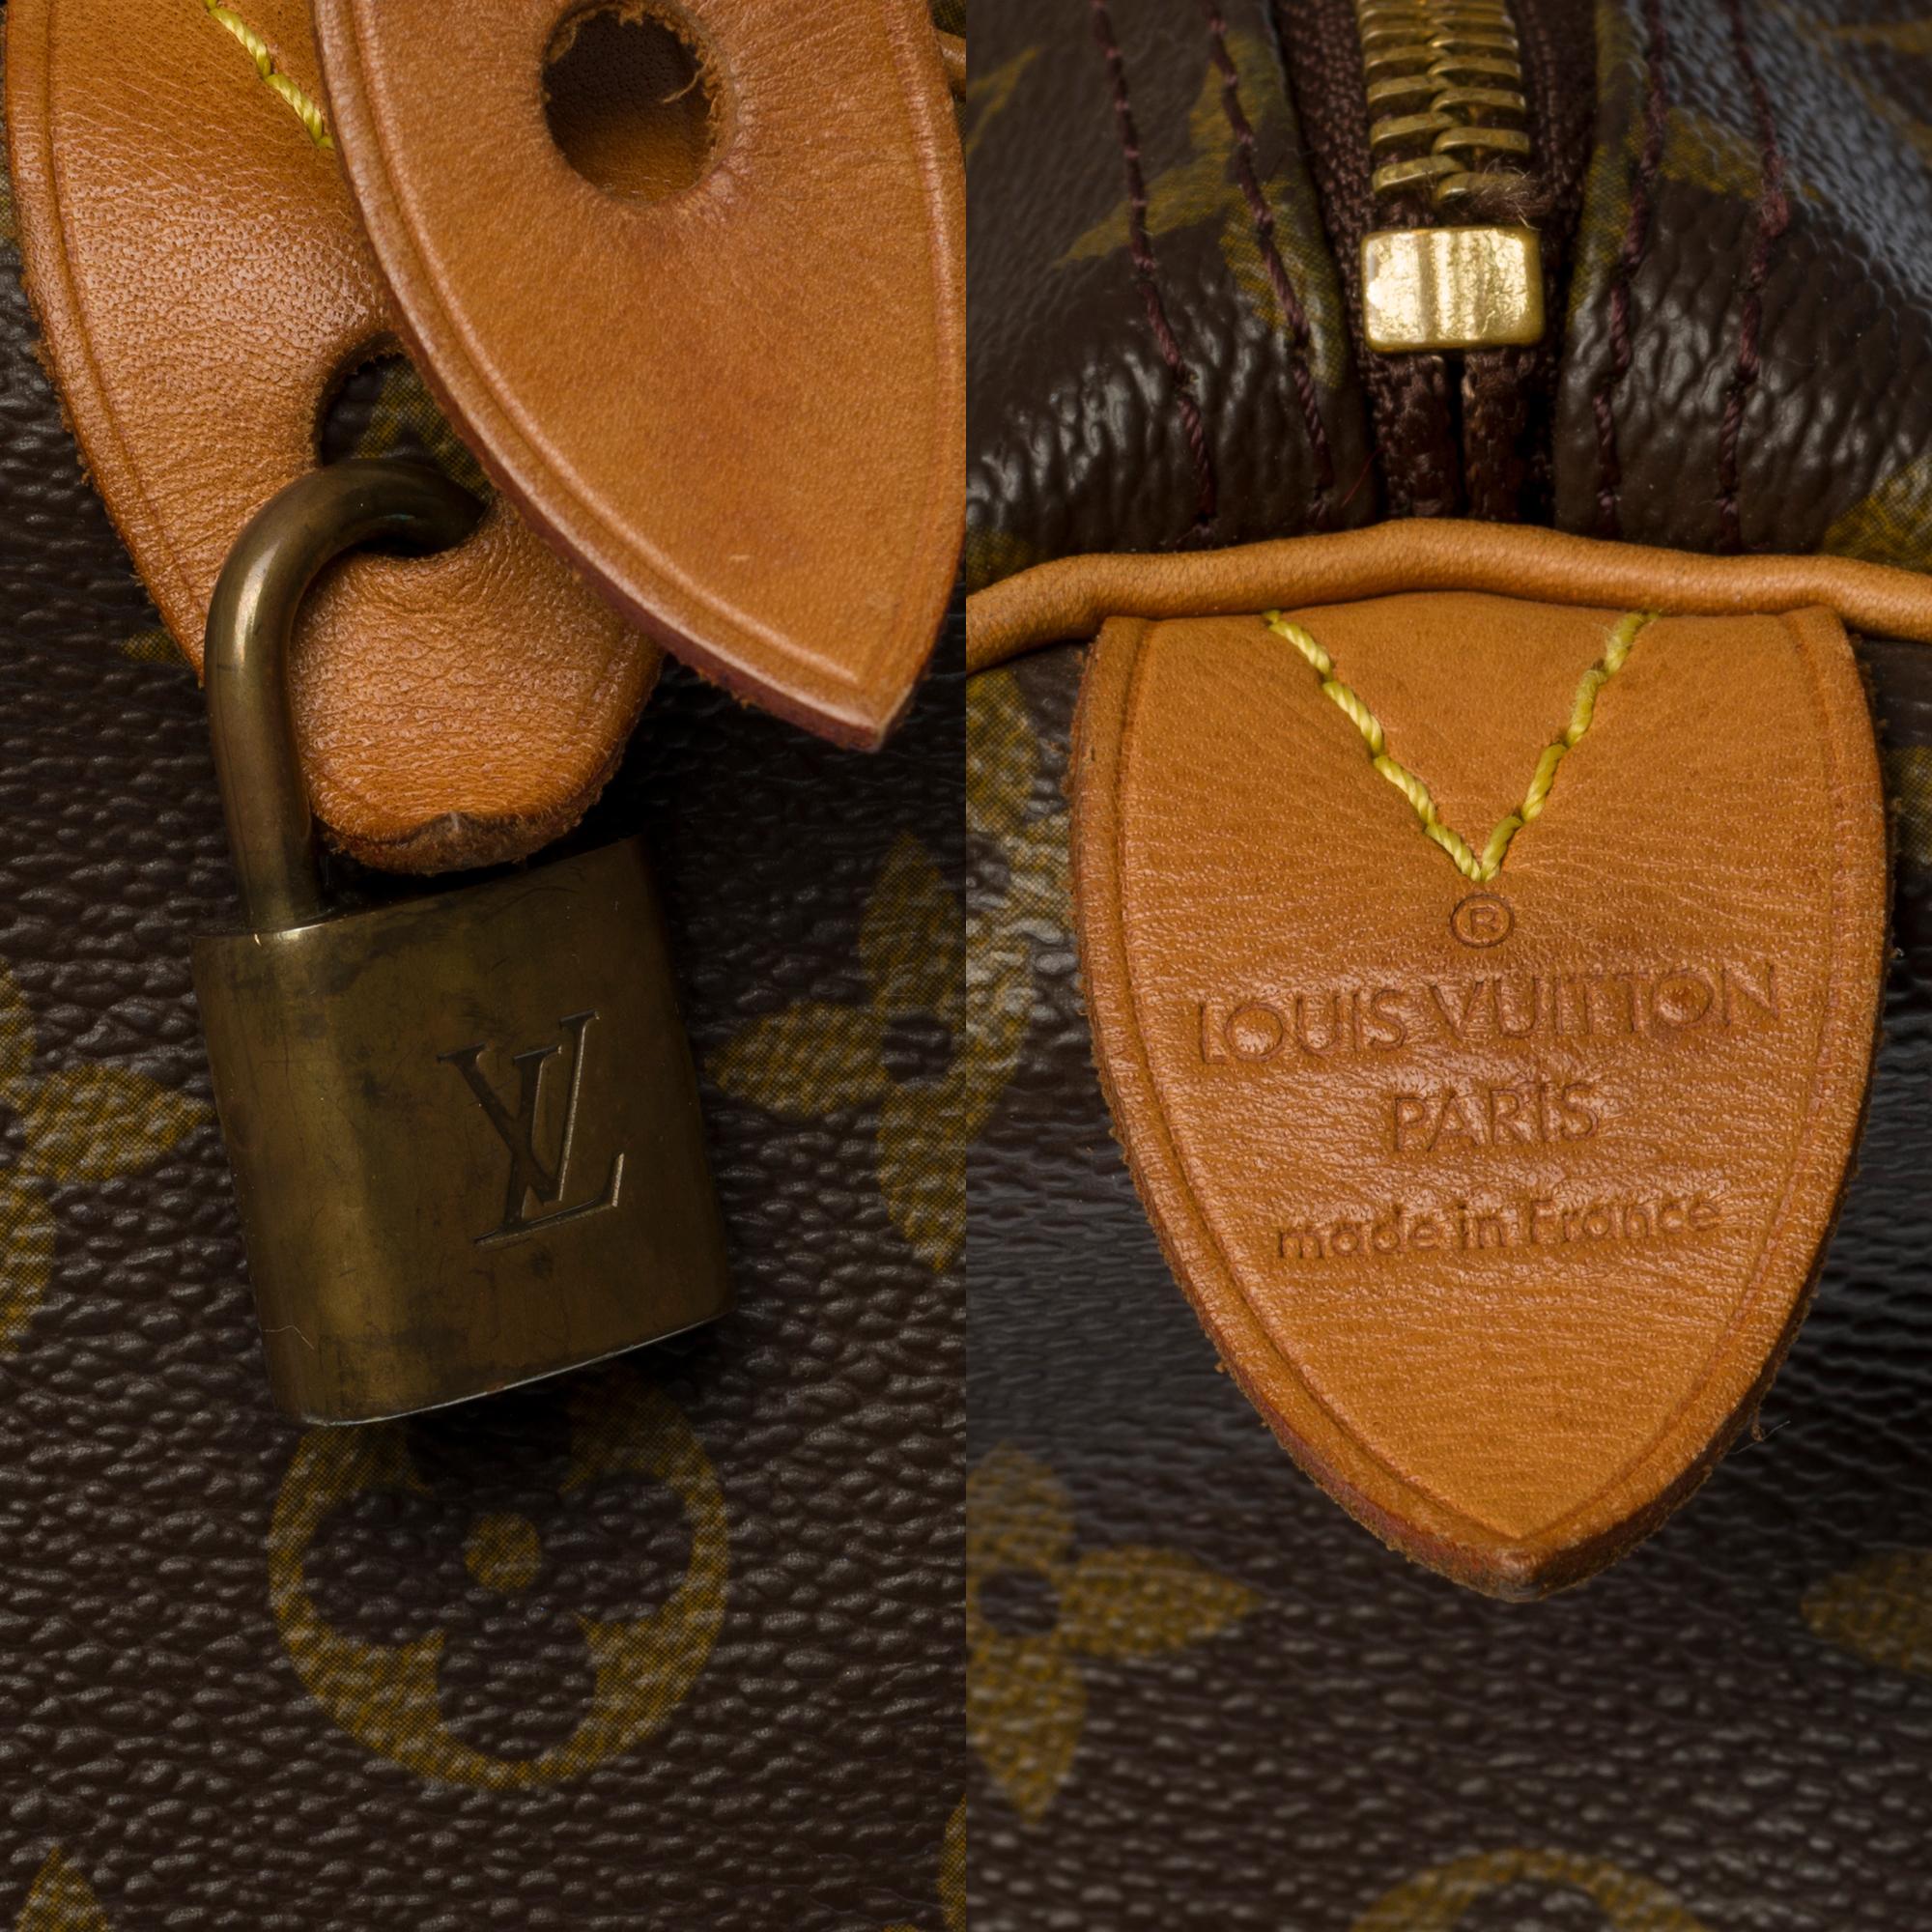 Women's Louis Vuitton Speedy 30 handbag in brown canvas